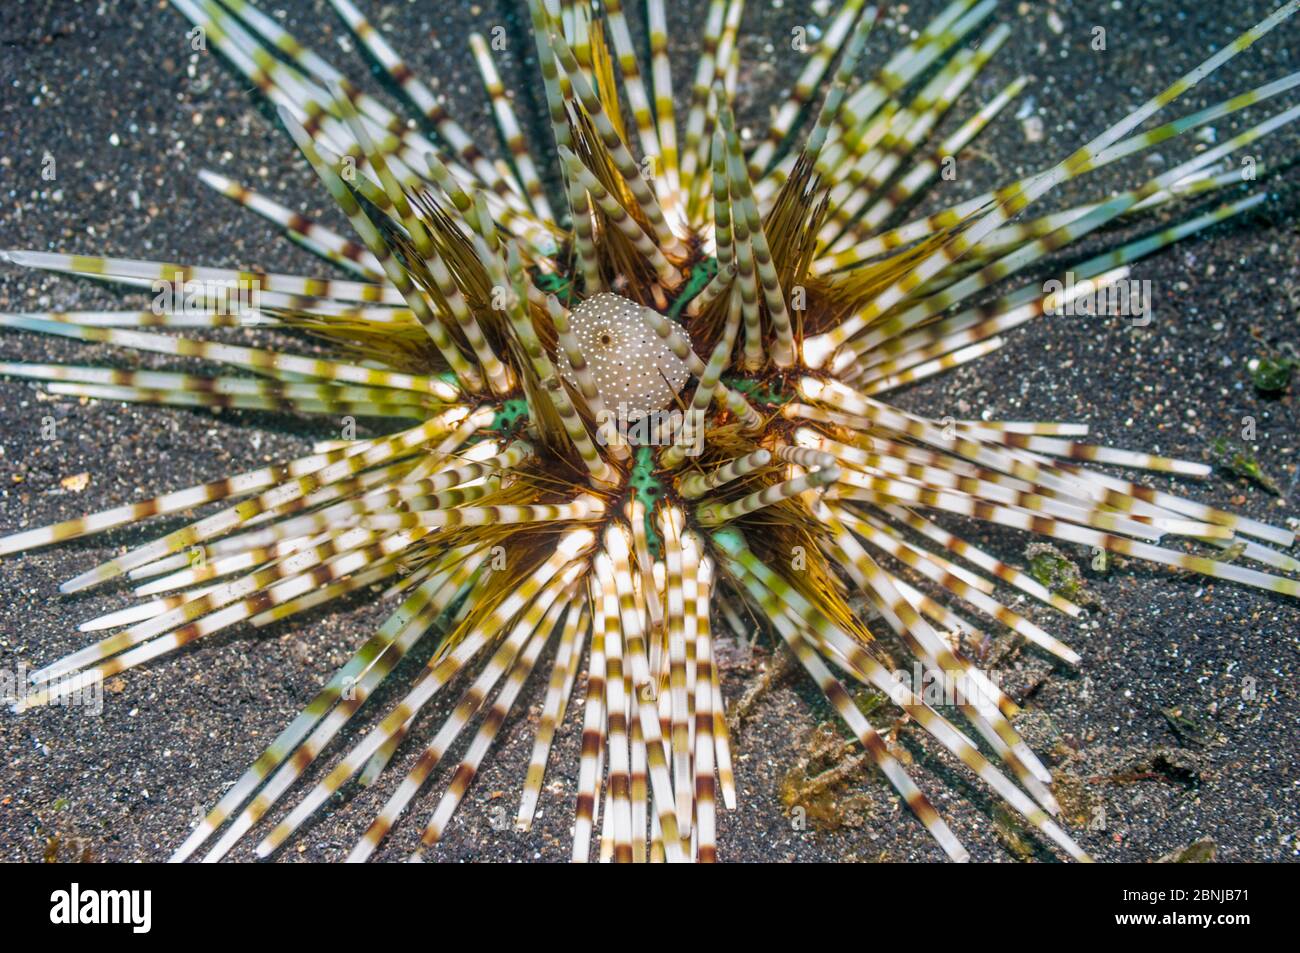 Urchin (Echinothrix calamaris) Indonesia. Stock Photo